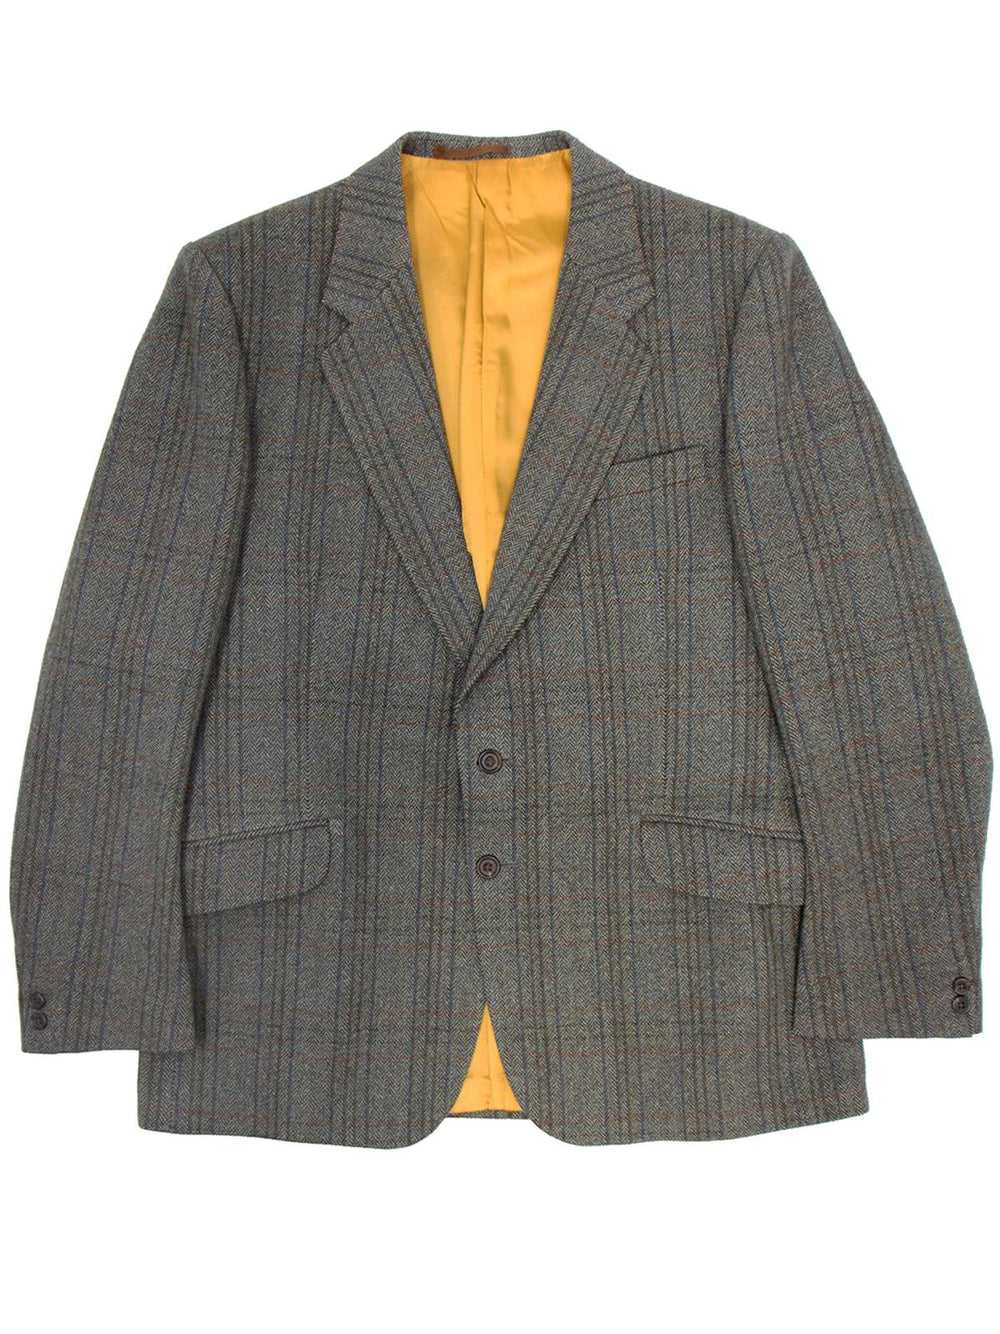 Vintage Saxony Herringbone Check Tweed Jacket - image 1